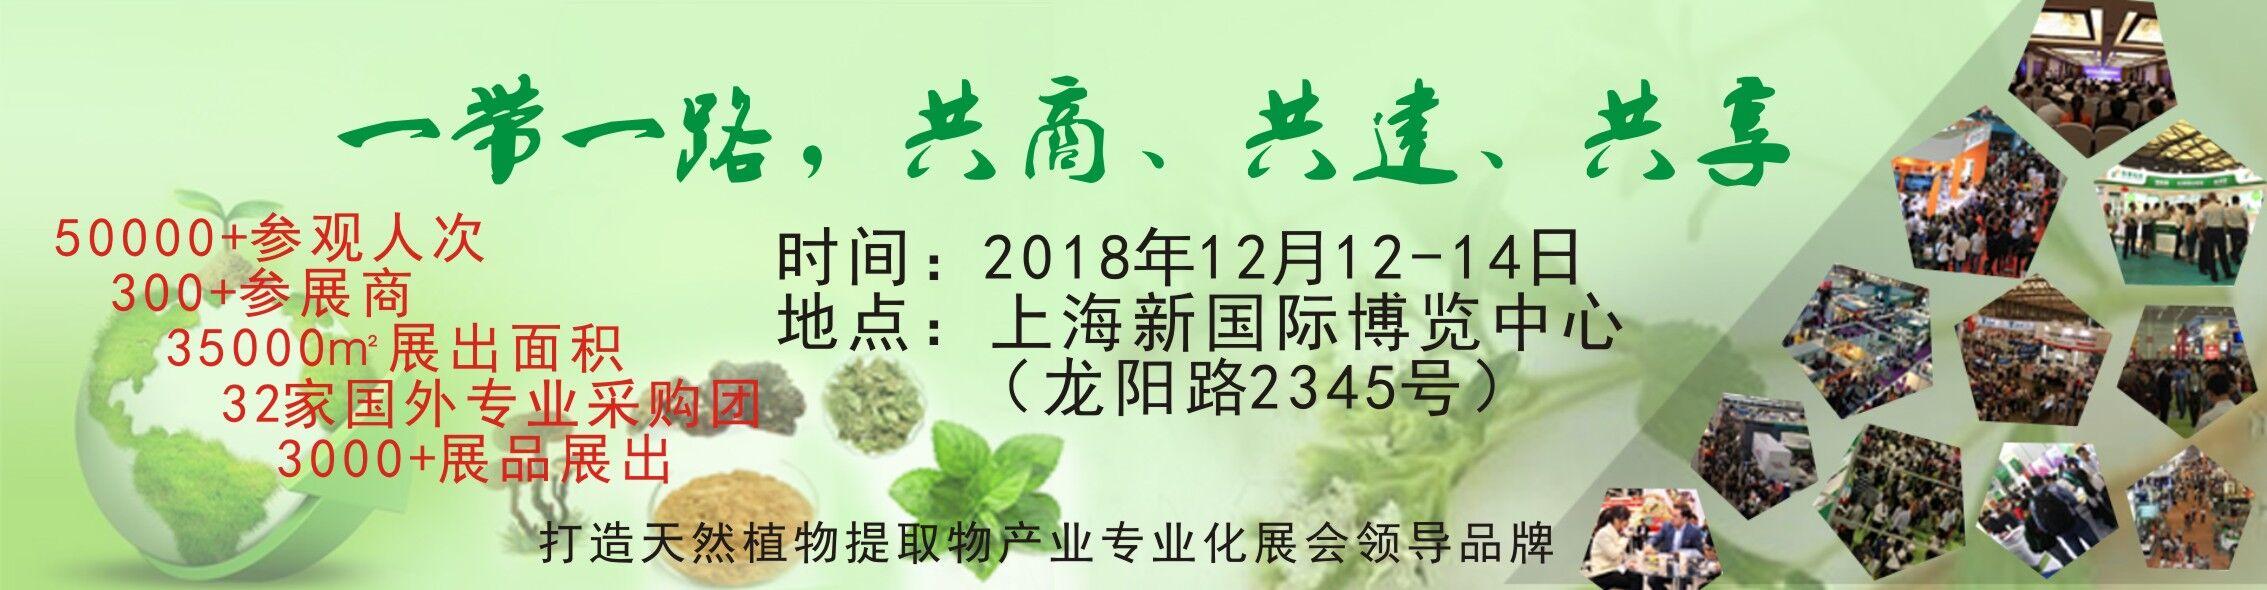 2018第八届亚太国际植物提取物展览会